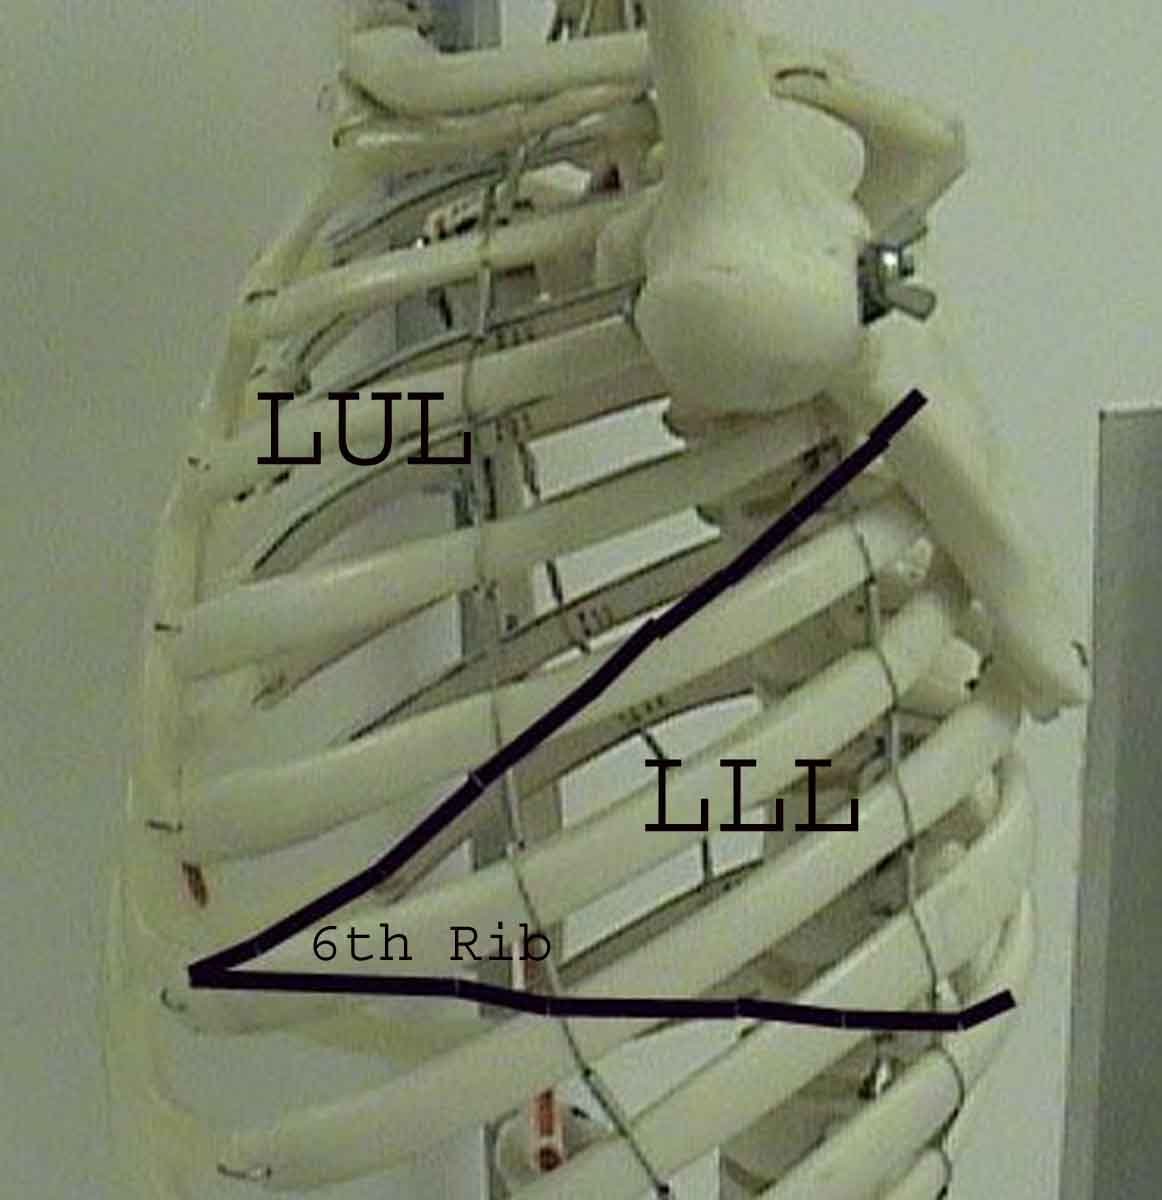 Lung thorax lline.jpg